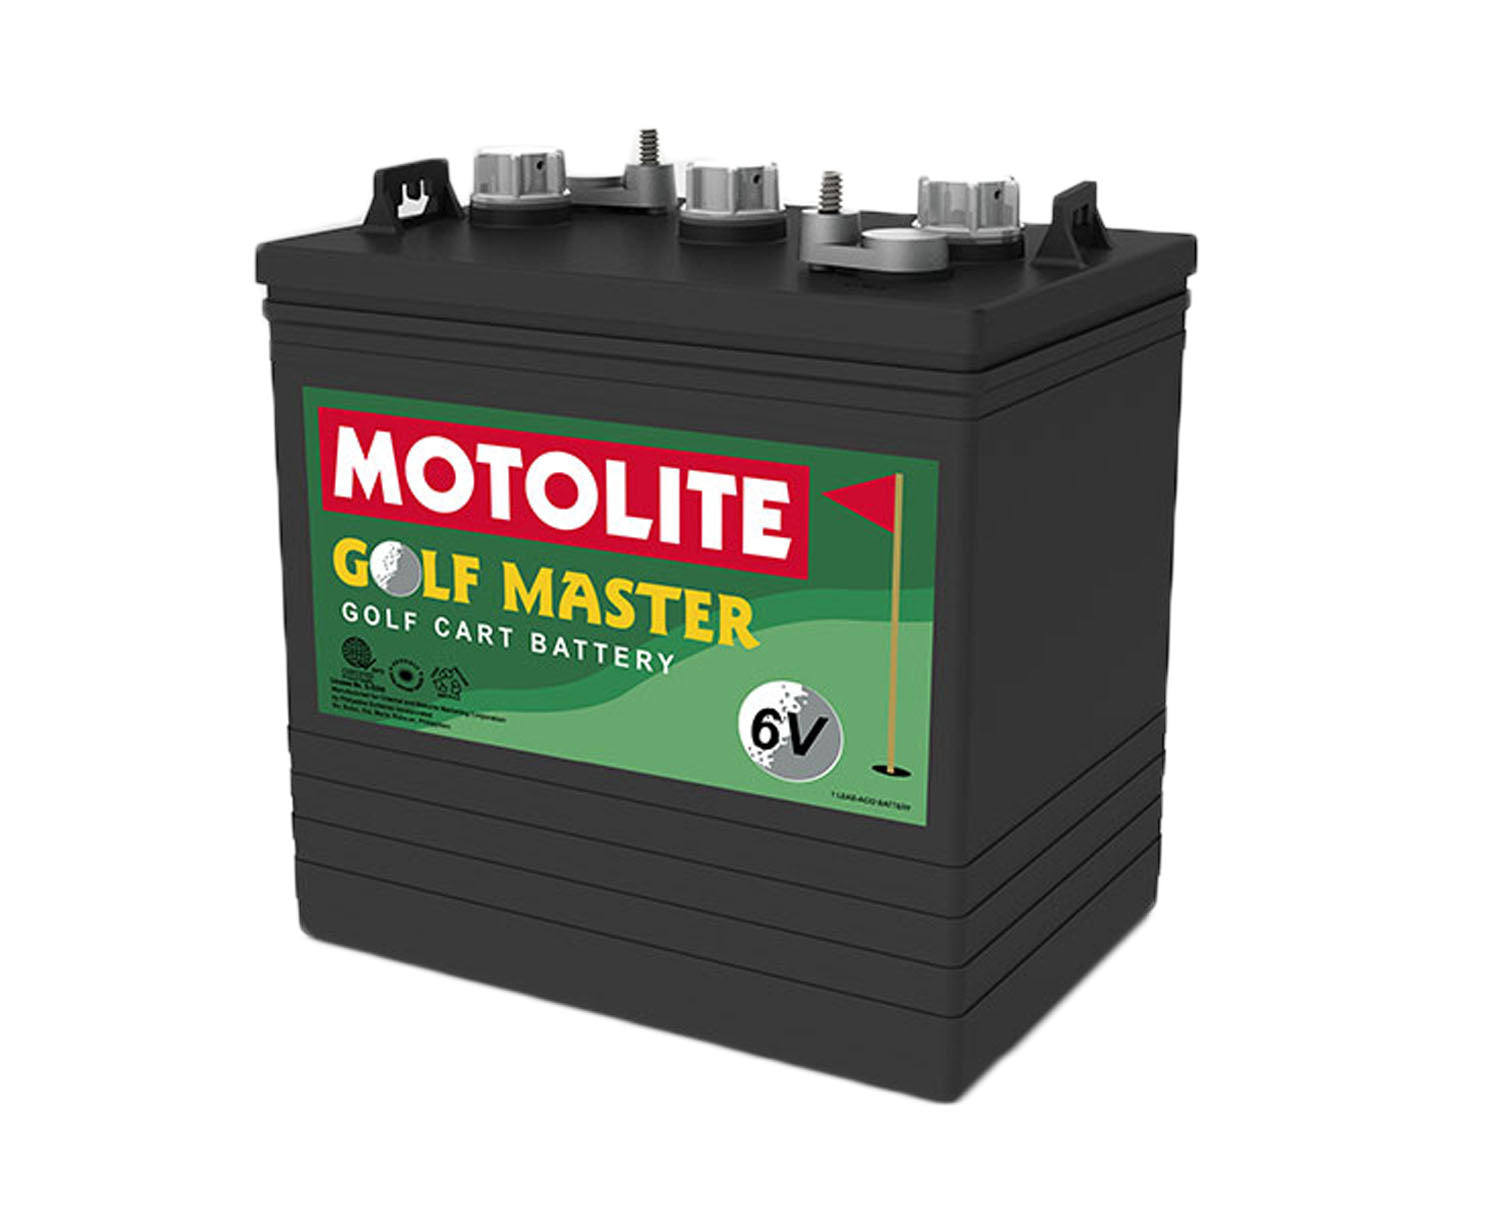 Motolite Golfmaster (Flat-Pasted)